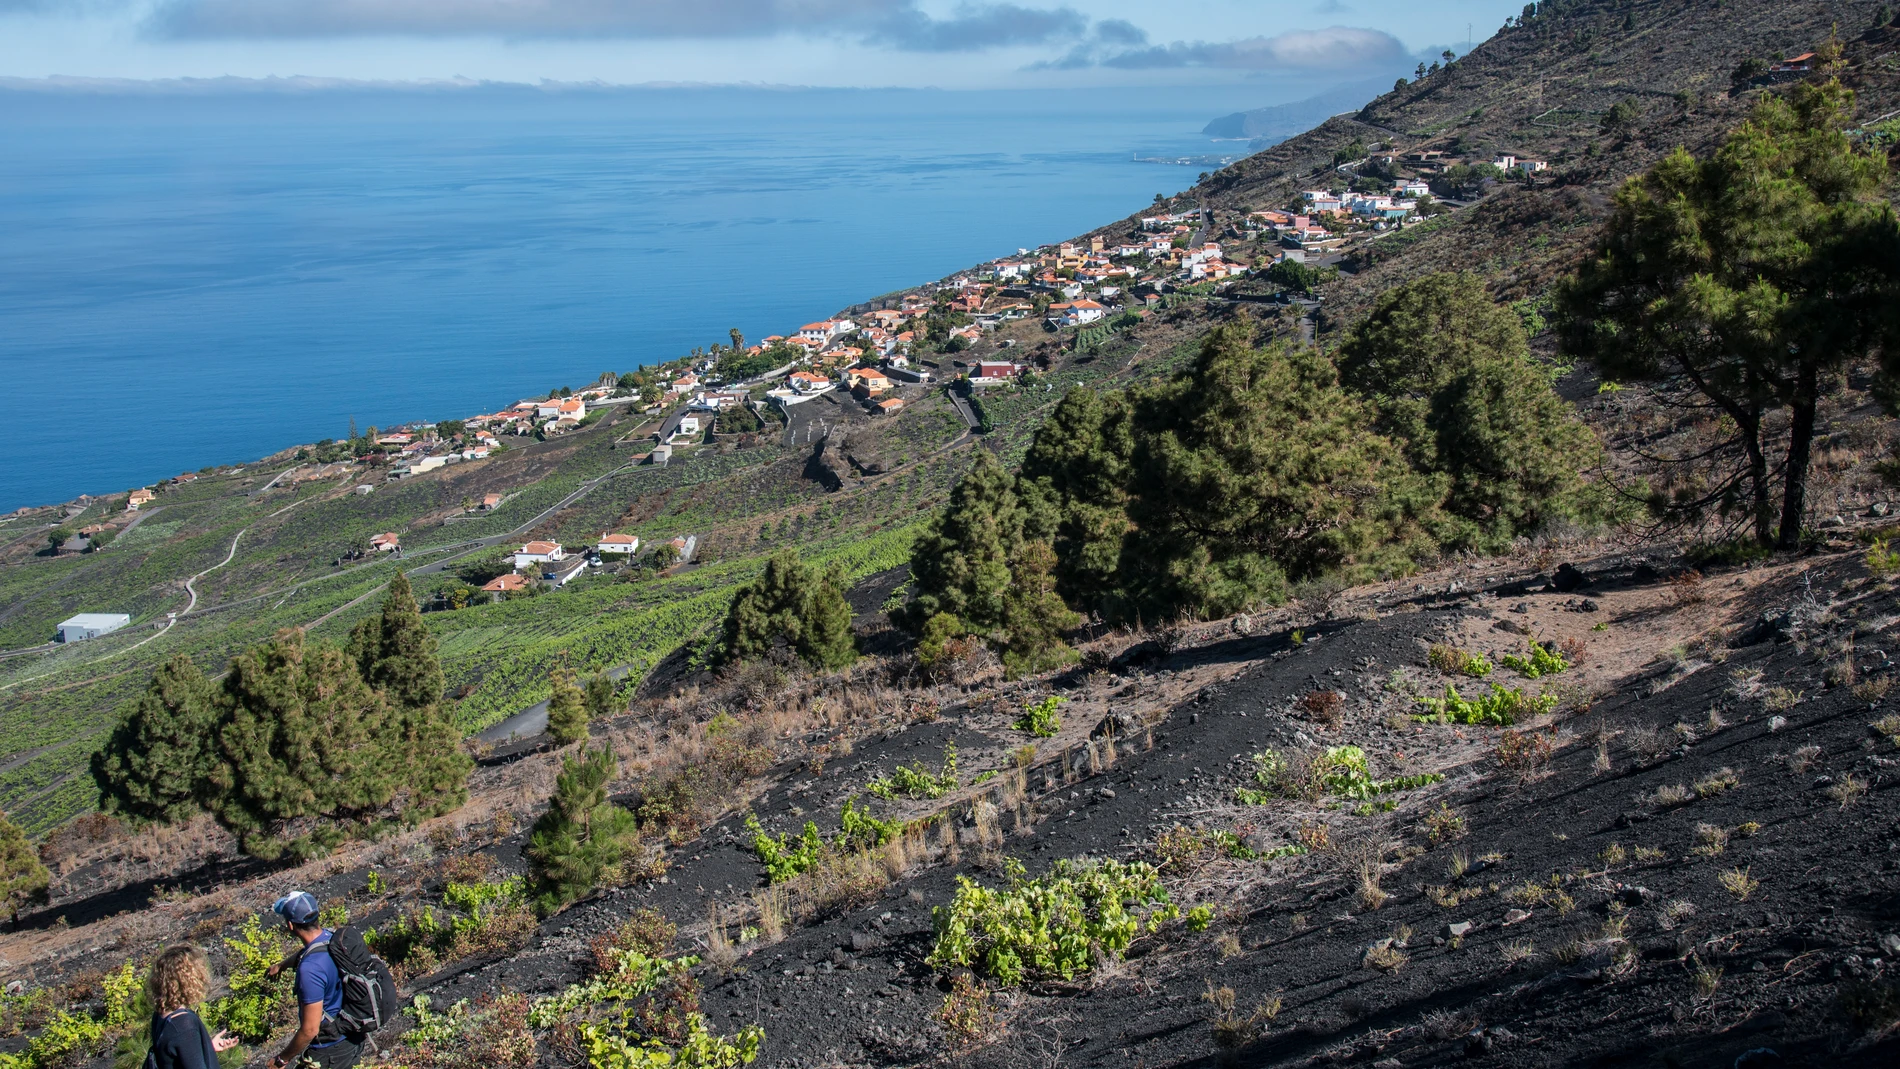 La ruta de los volcanes permite al viajero pisar por antiguos senderos de lava